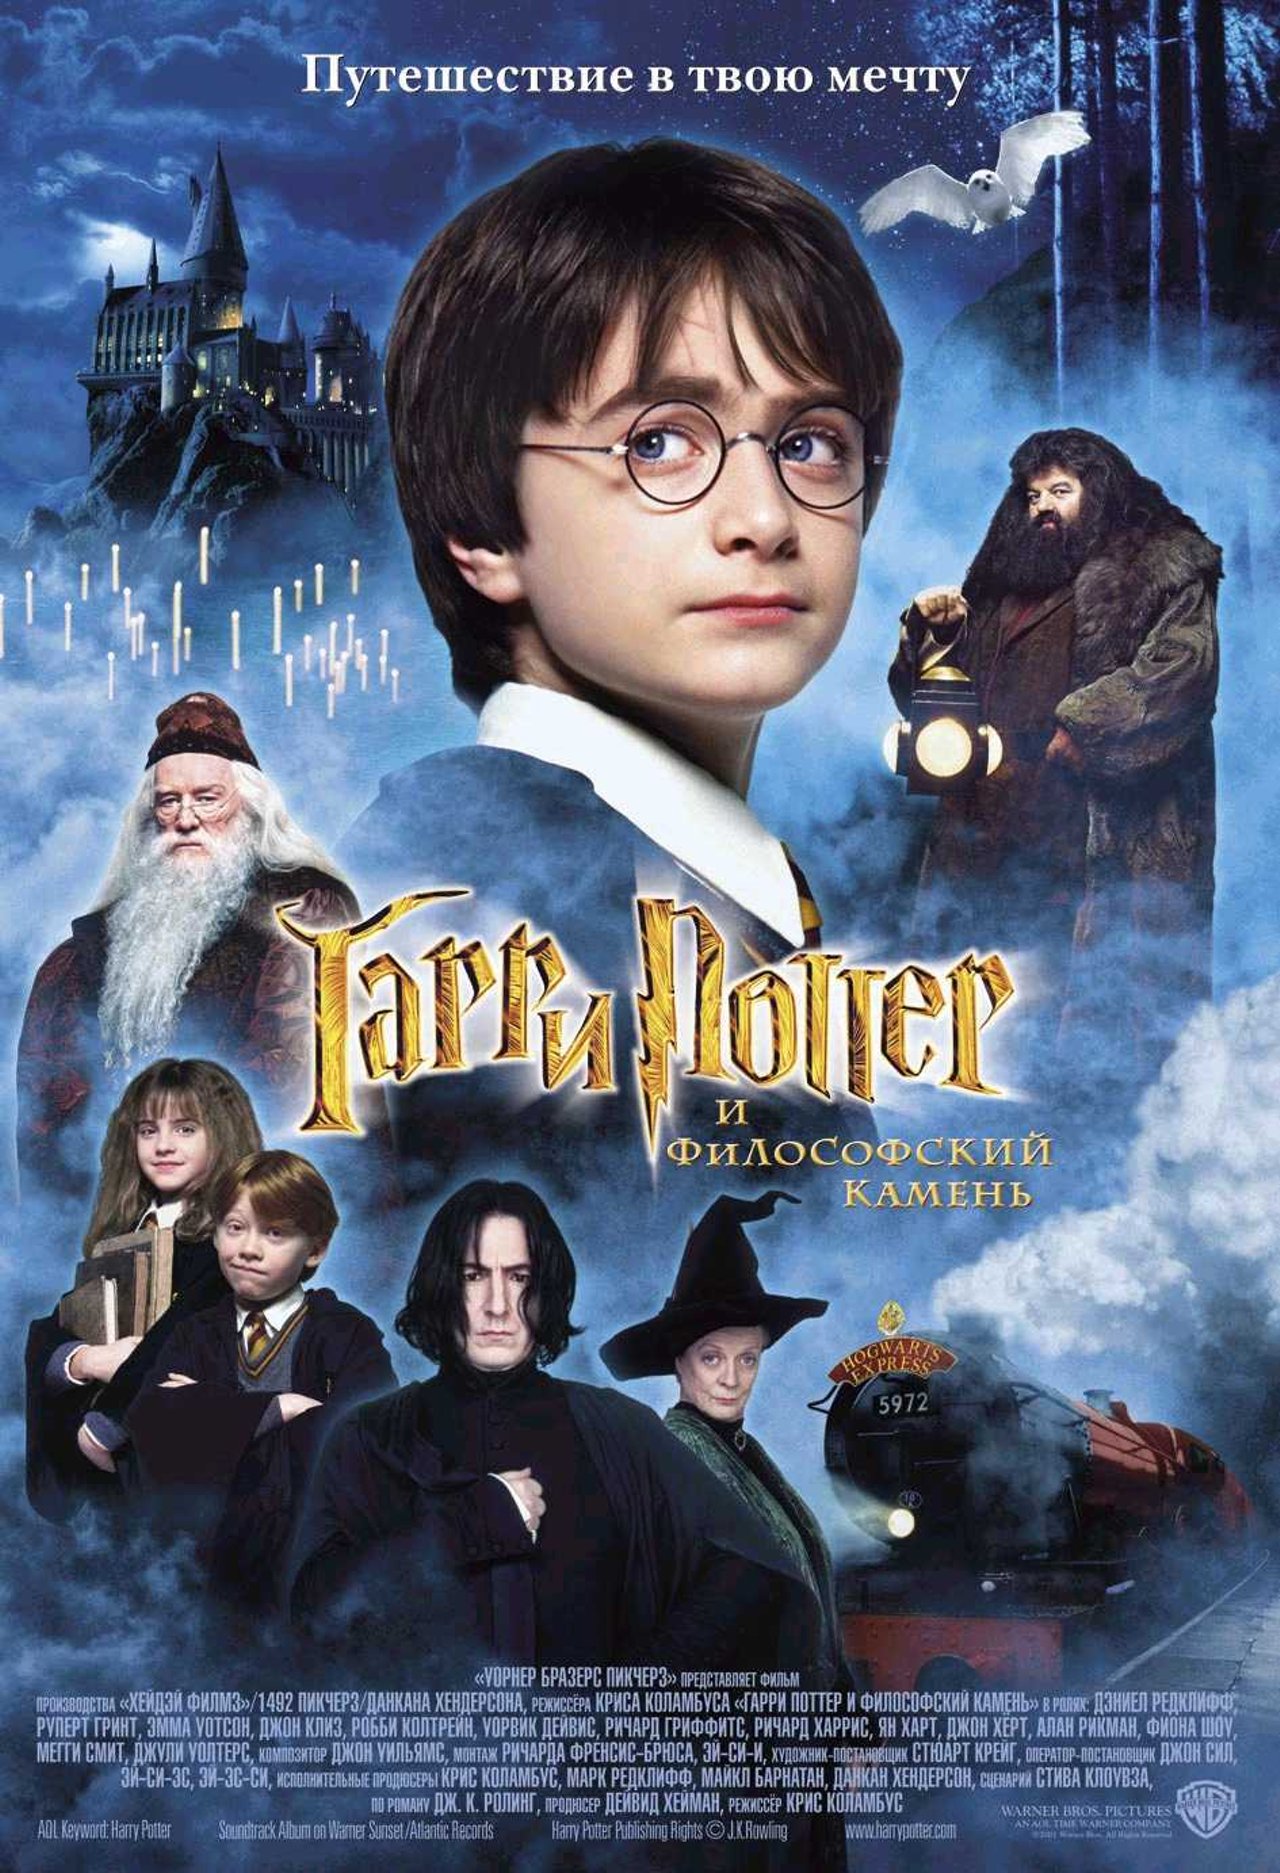 Волшебные палочки из фильма о Гарри Поттере, видео к объявлению #авито #HarryPotter